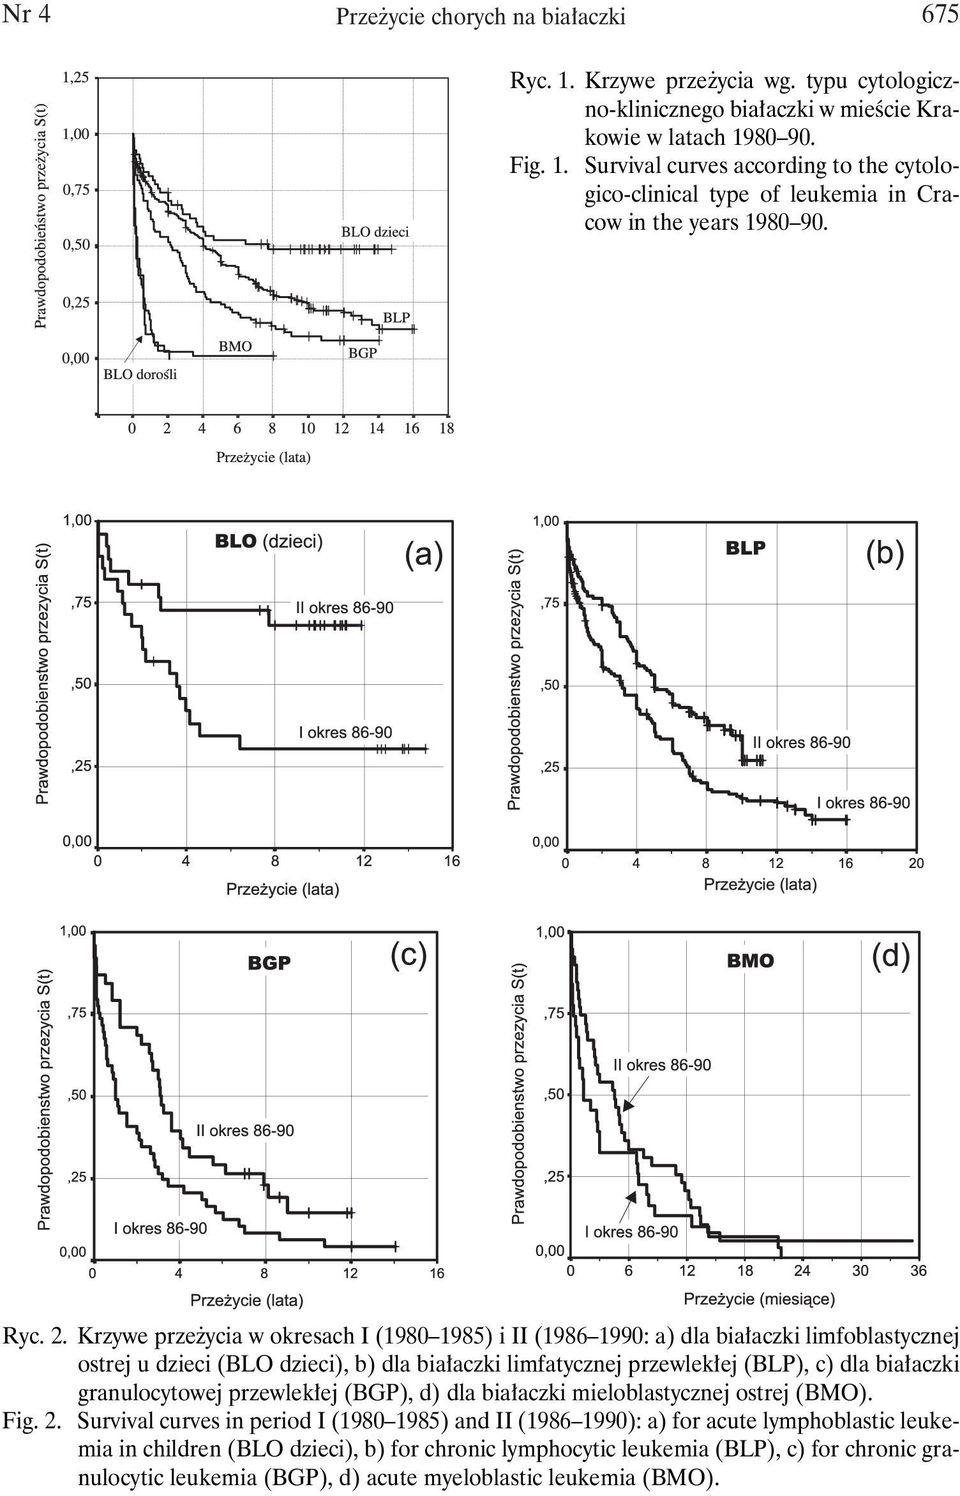 Krzywe przeżycia w okresach I (1980 1985) i II (1986 1990: a) dla białaczki limfoblastycznej ostrej u dzieci (BLO dzieci), b) dla białaczki limfatycznej przewlekłej (BLP), c) dla białaczki